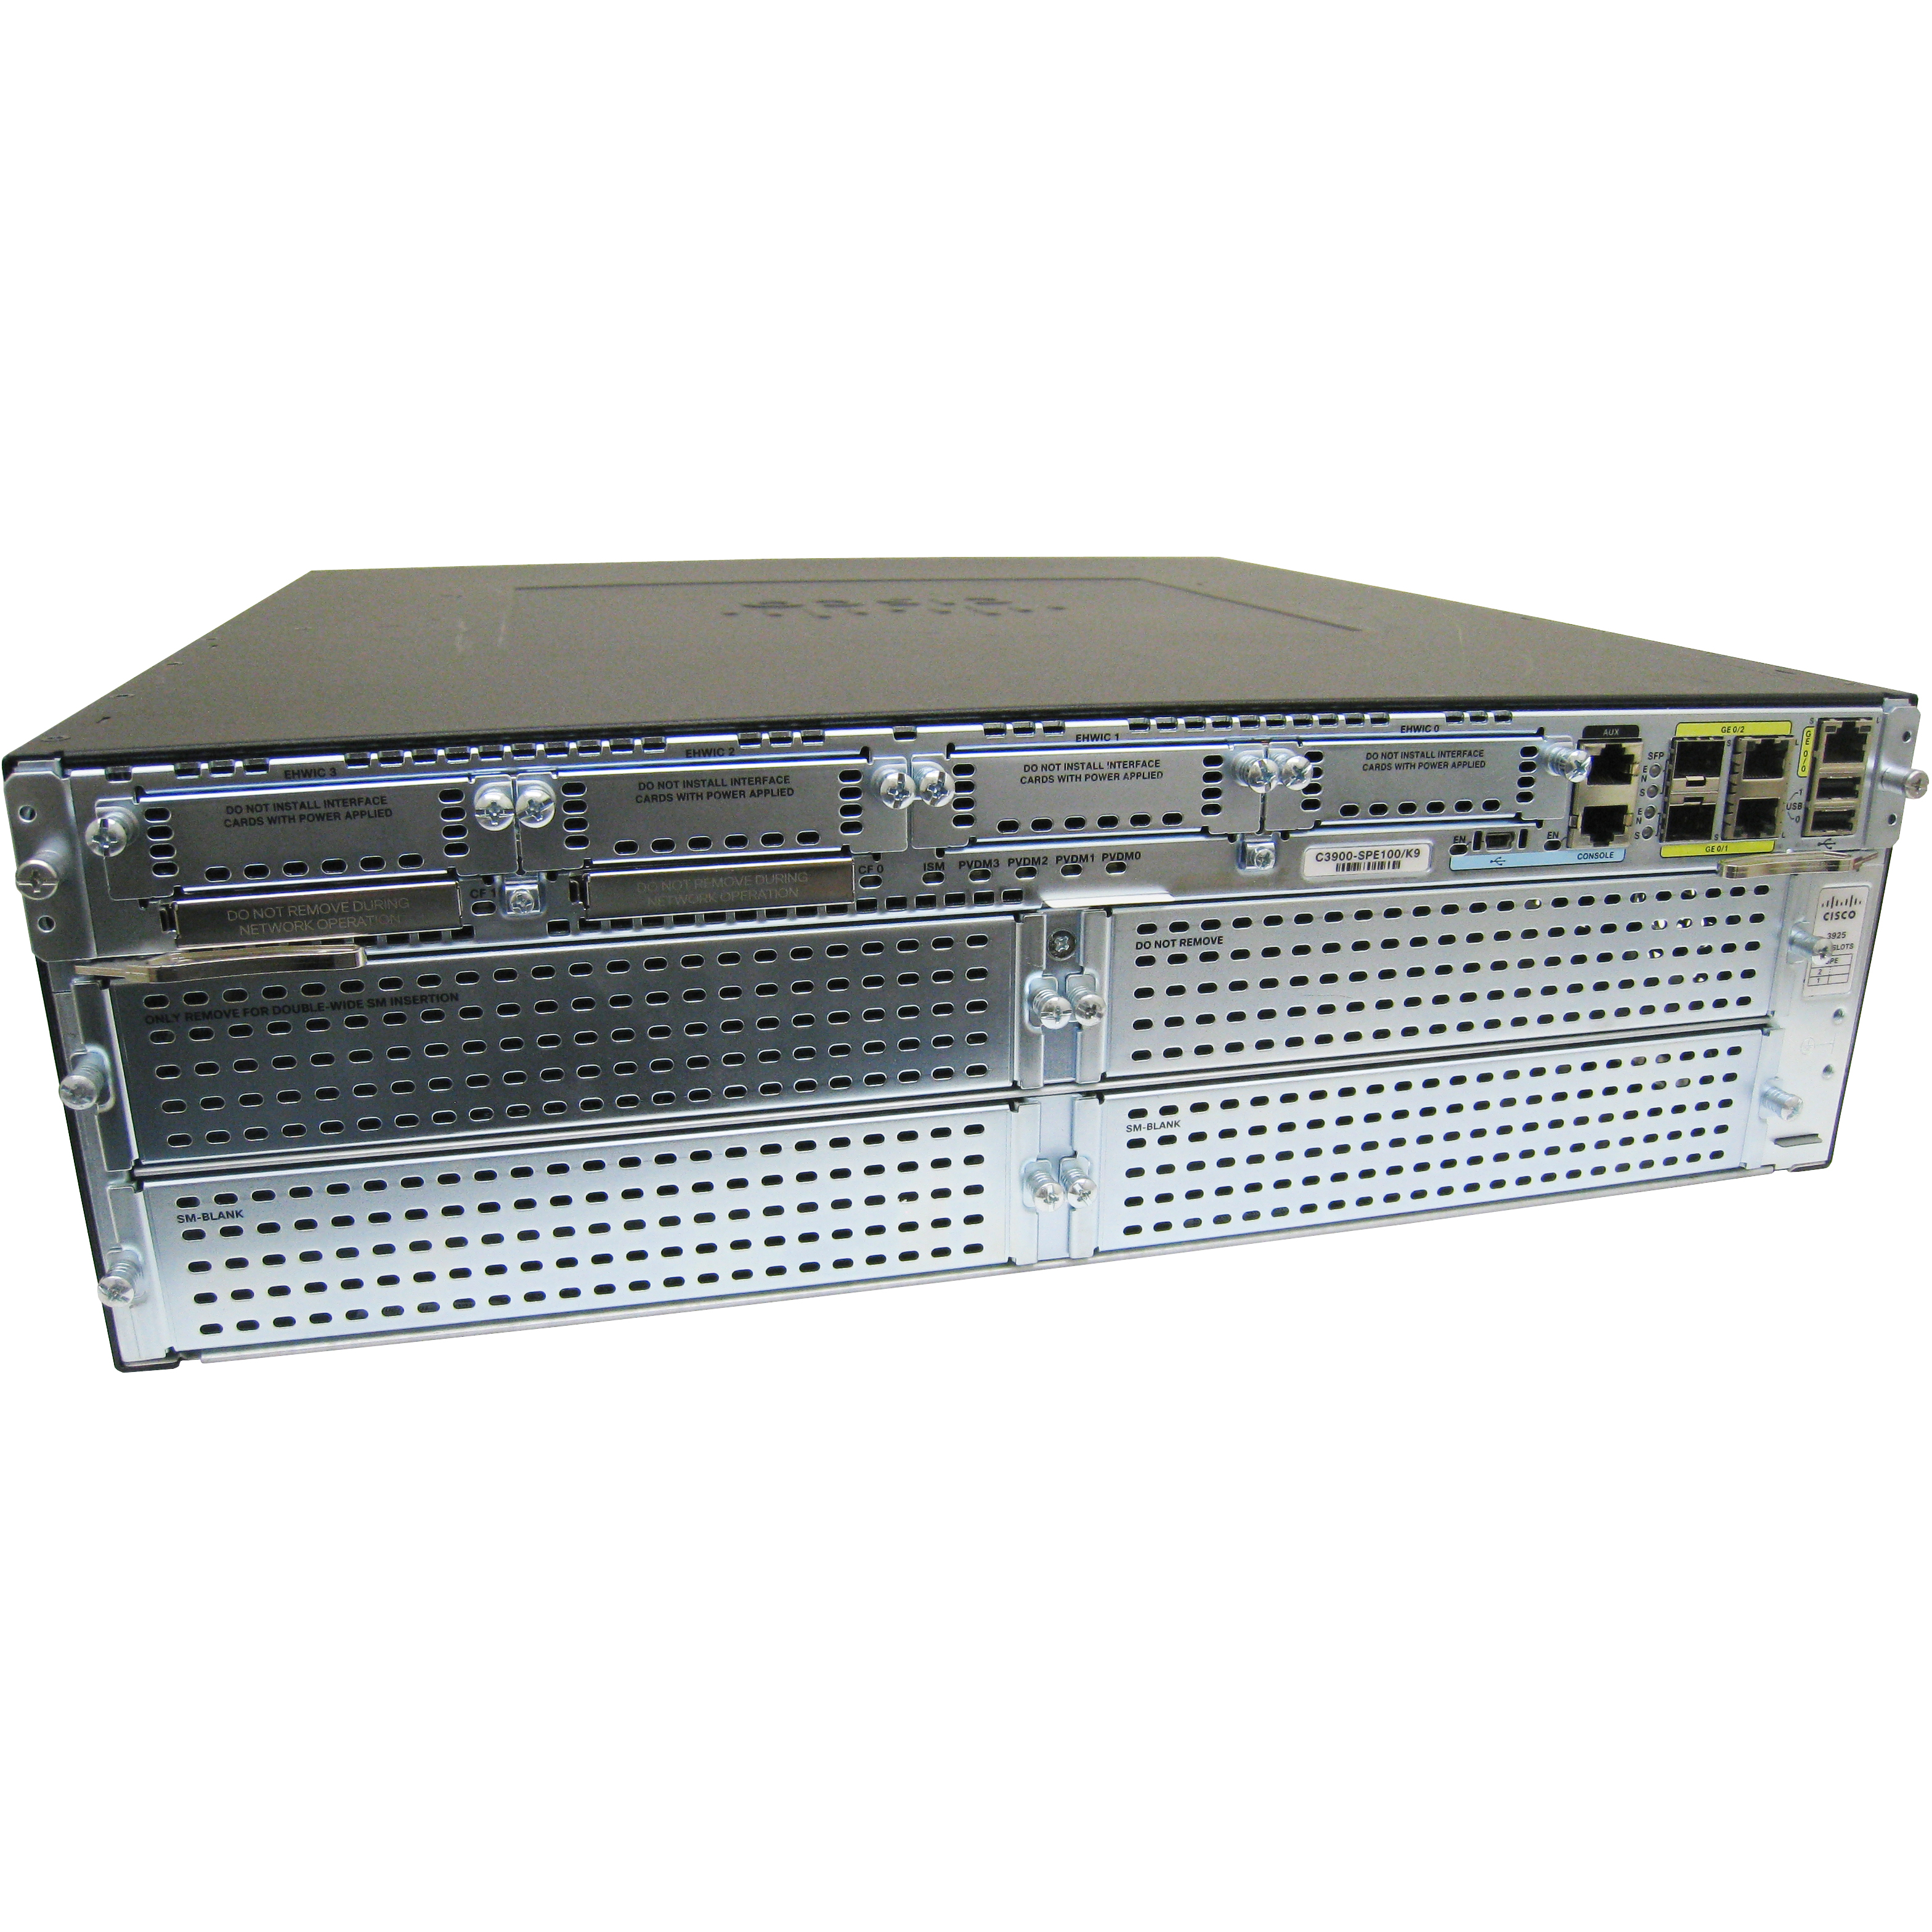 Cisco CISCO3945-SEC/K9